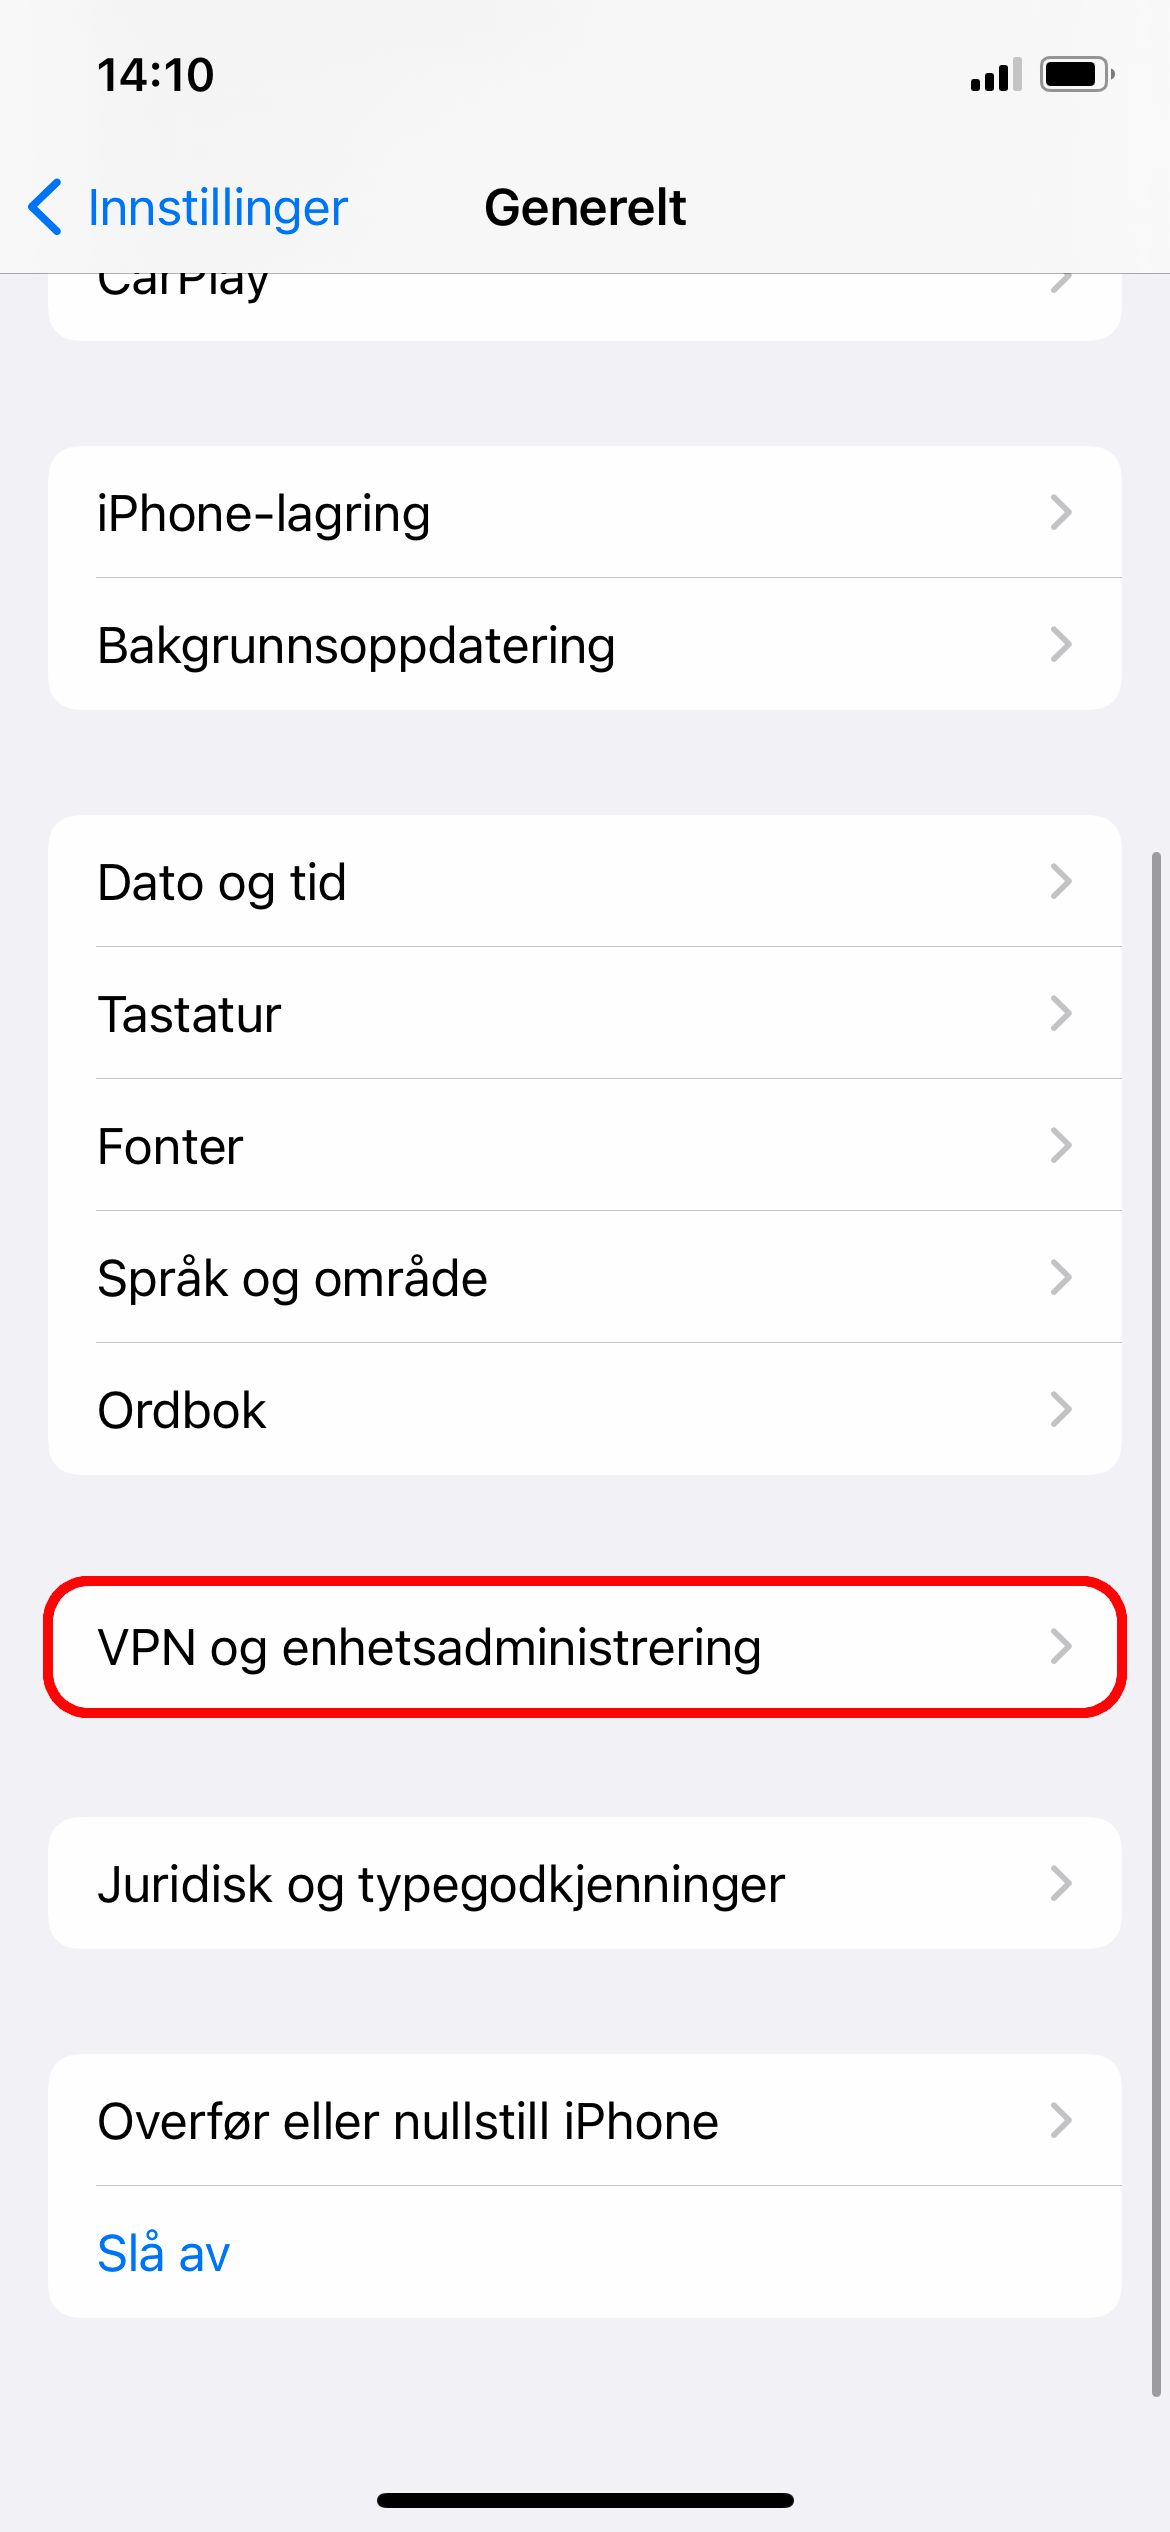 Valget "VPN og enhetsadministrering" markert